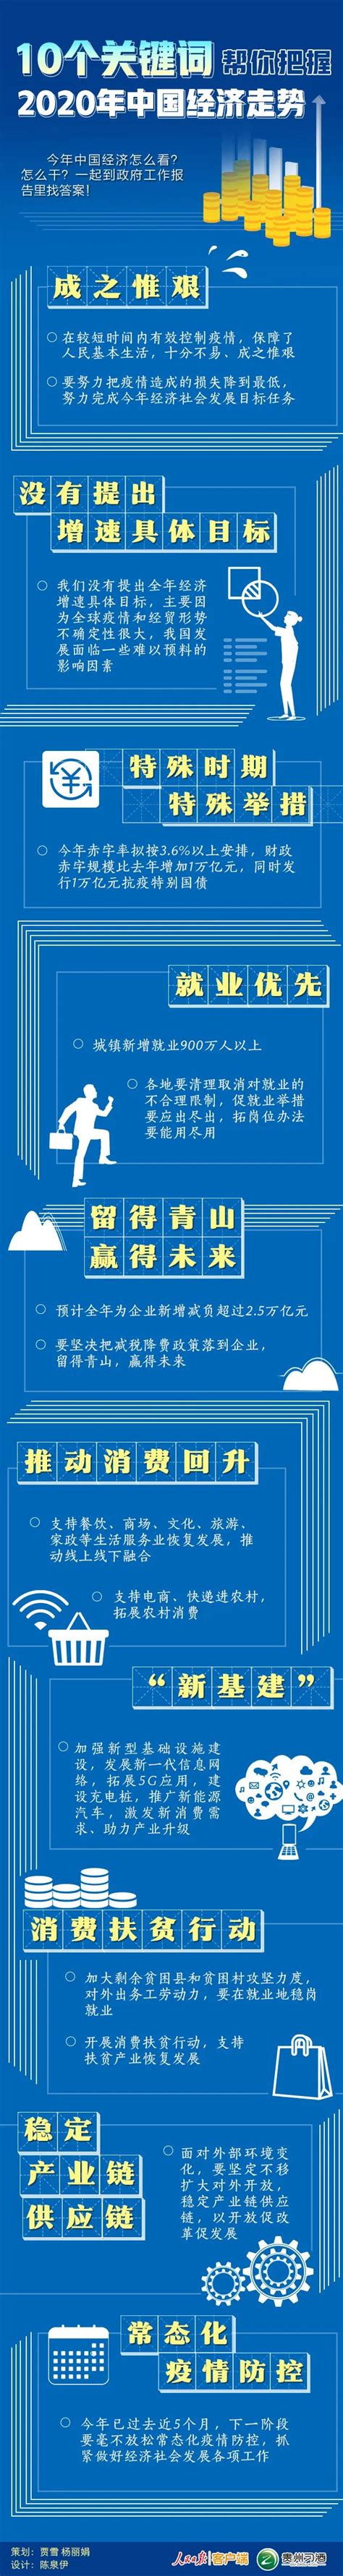 10个关键词帮你把握2020年中国经济走势 - 中国日报网